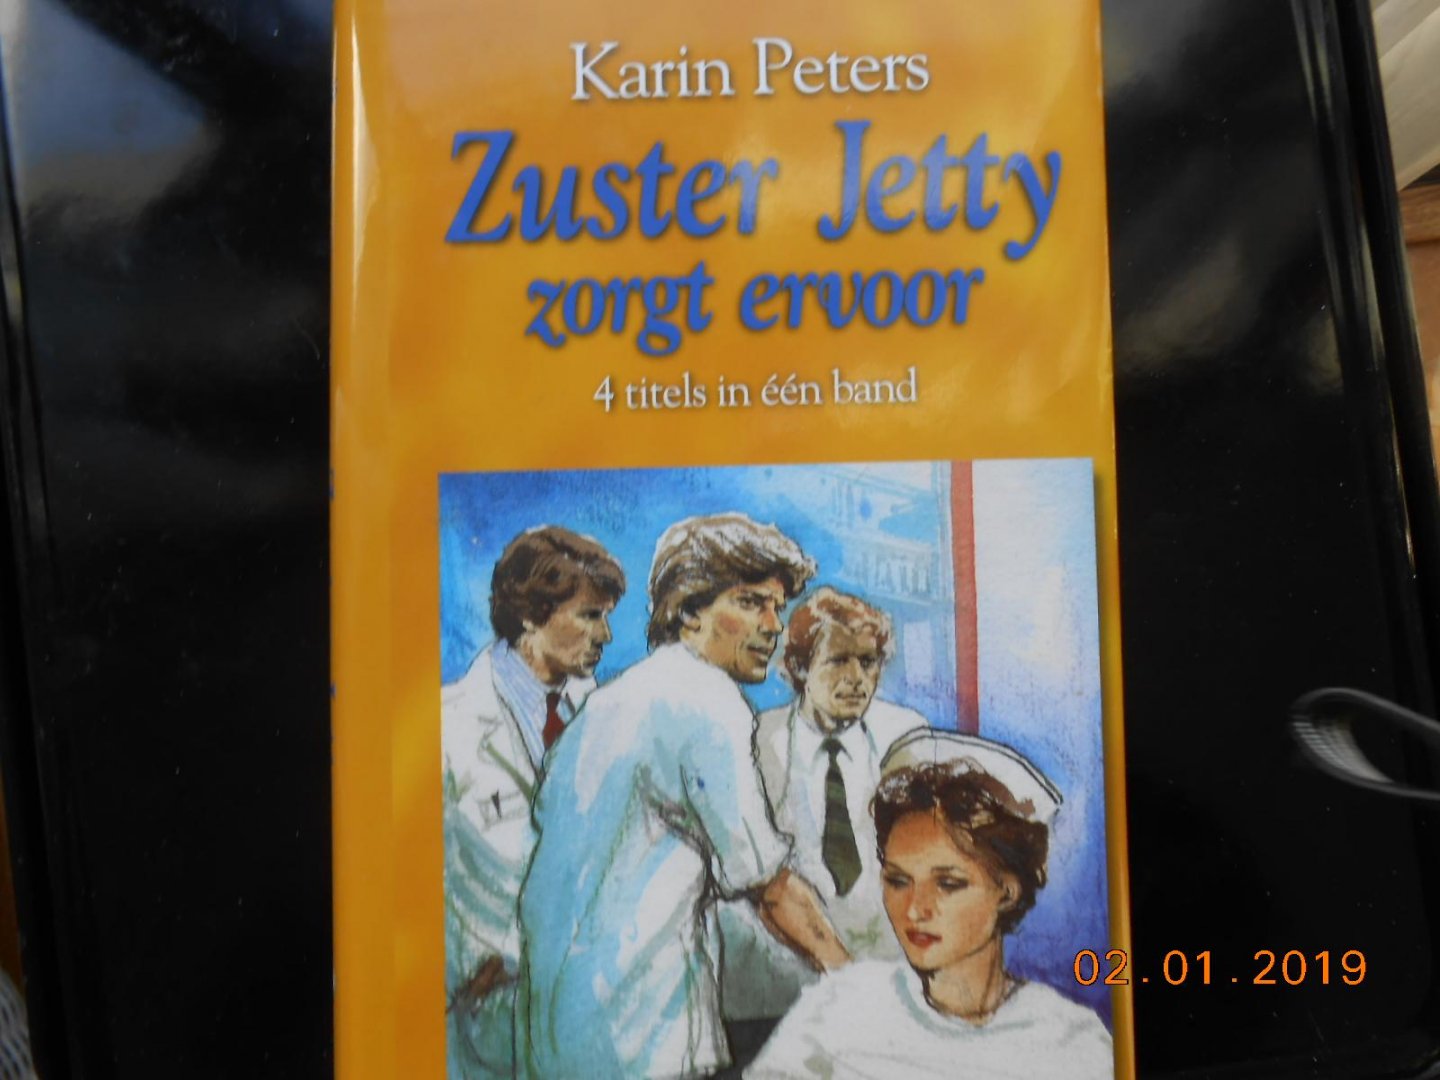 Peters, Karin. - Zuster Jetty zorgt er voor